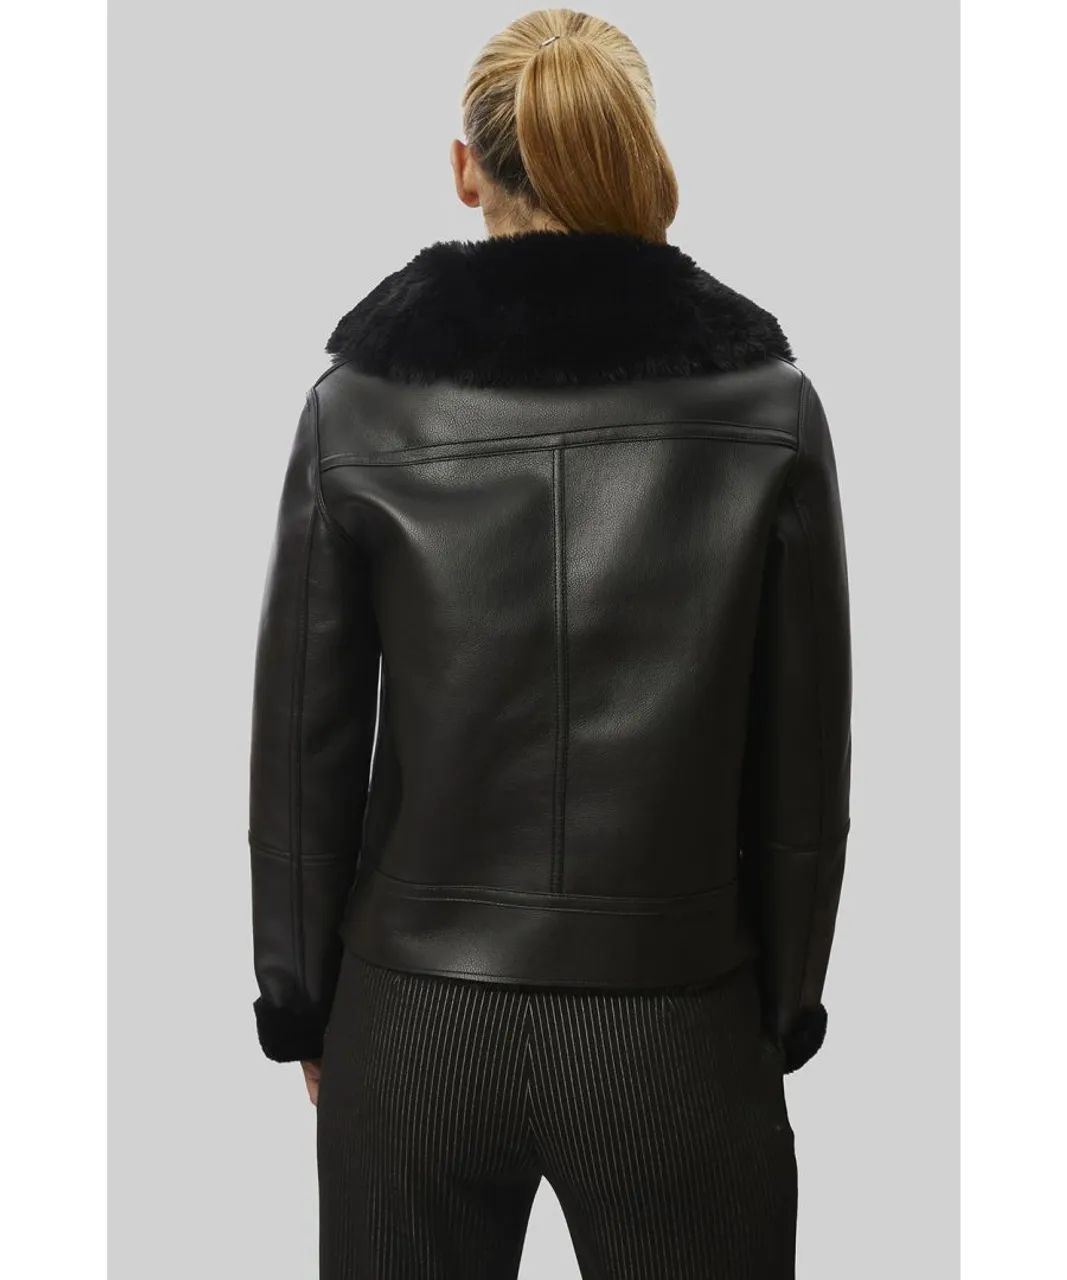 James Lakeland Womens Faux Leather Jacket Black